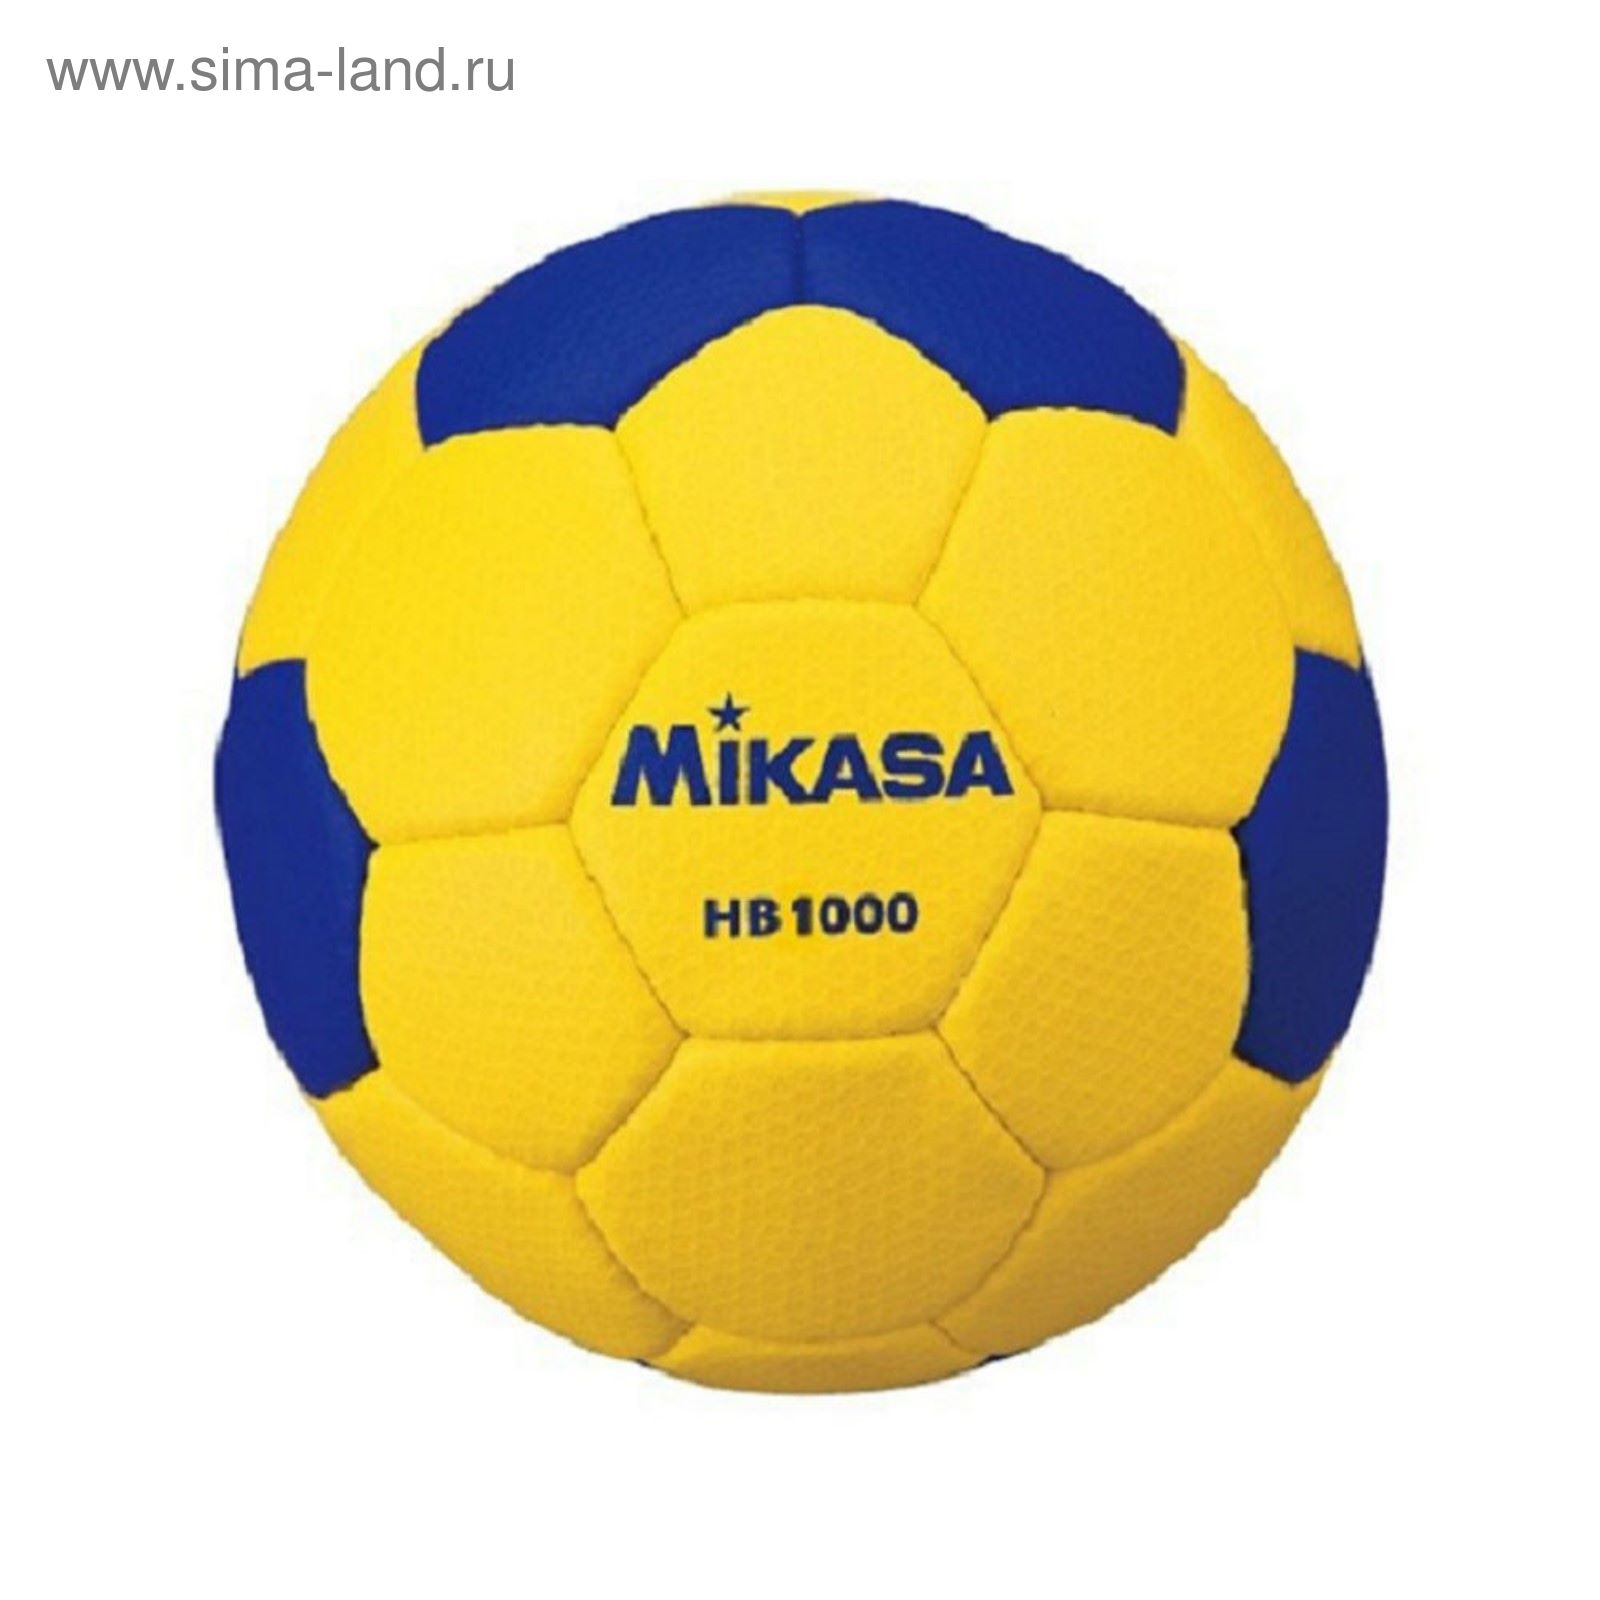 Мяч гандбольный Mikasa HB1000